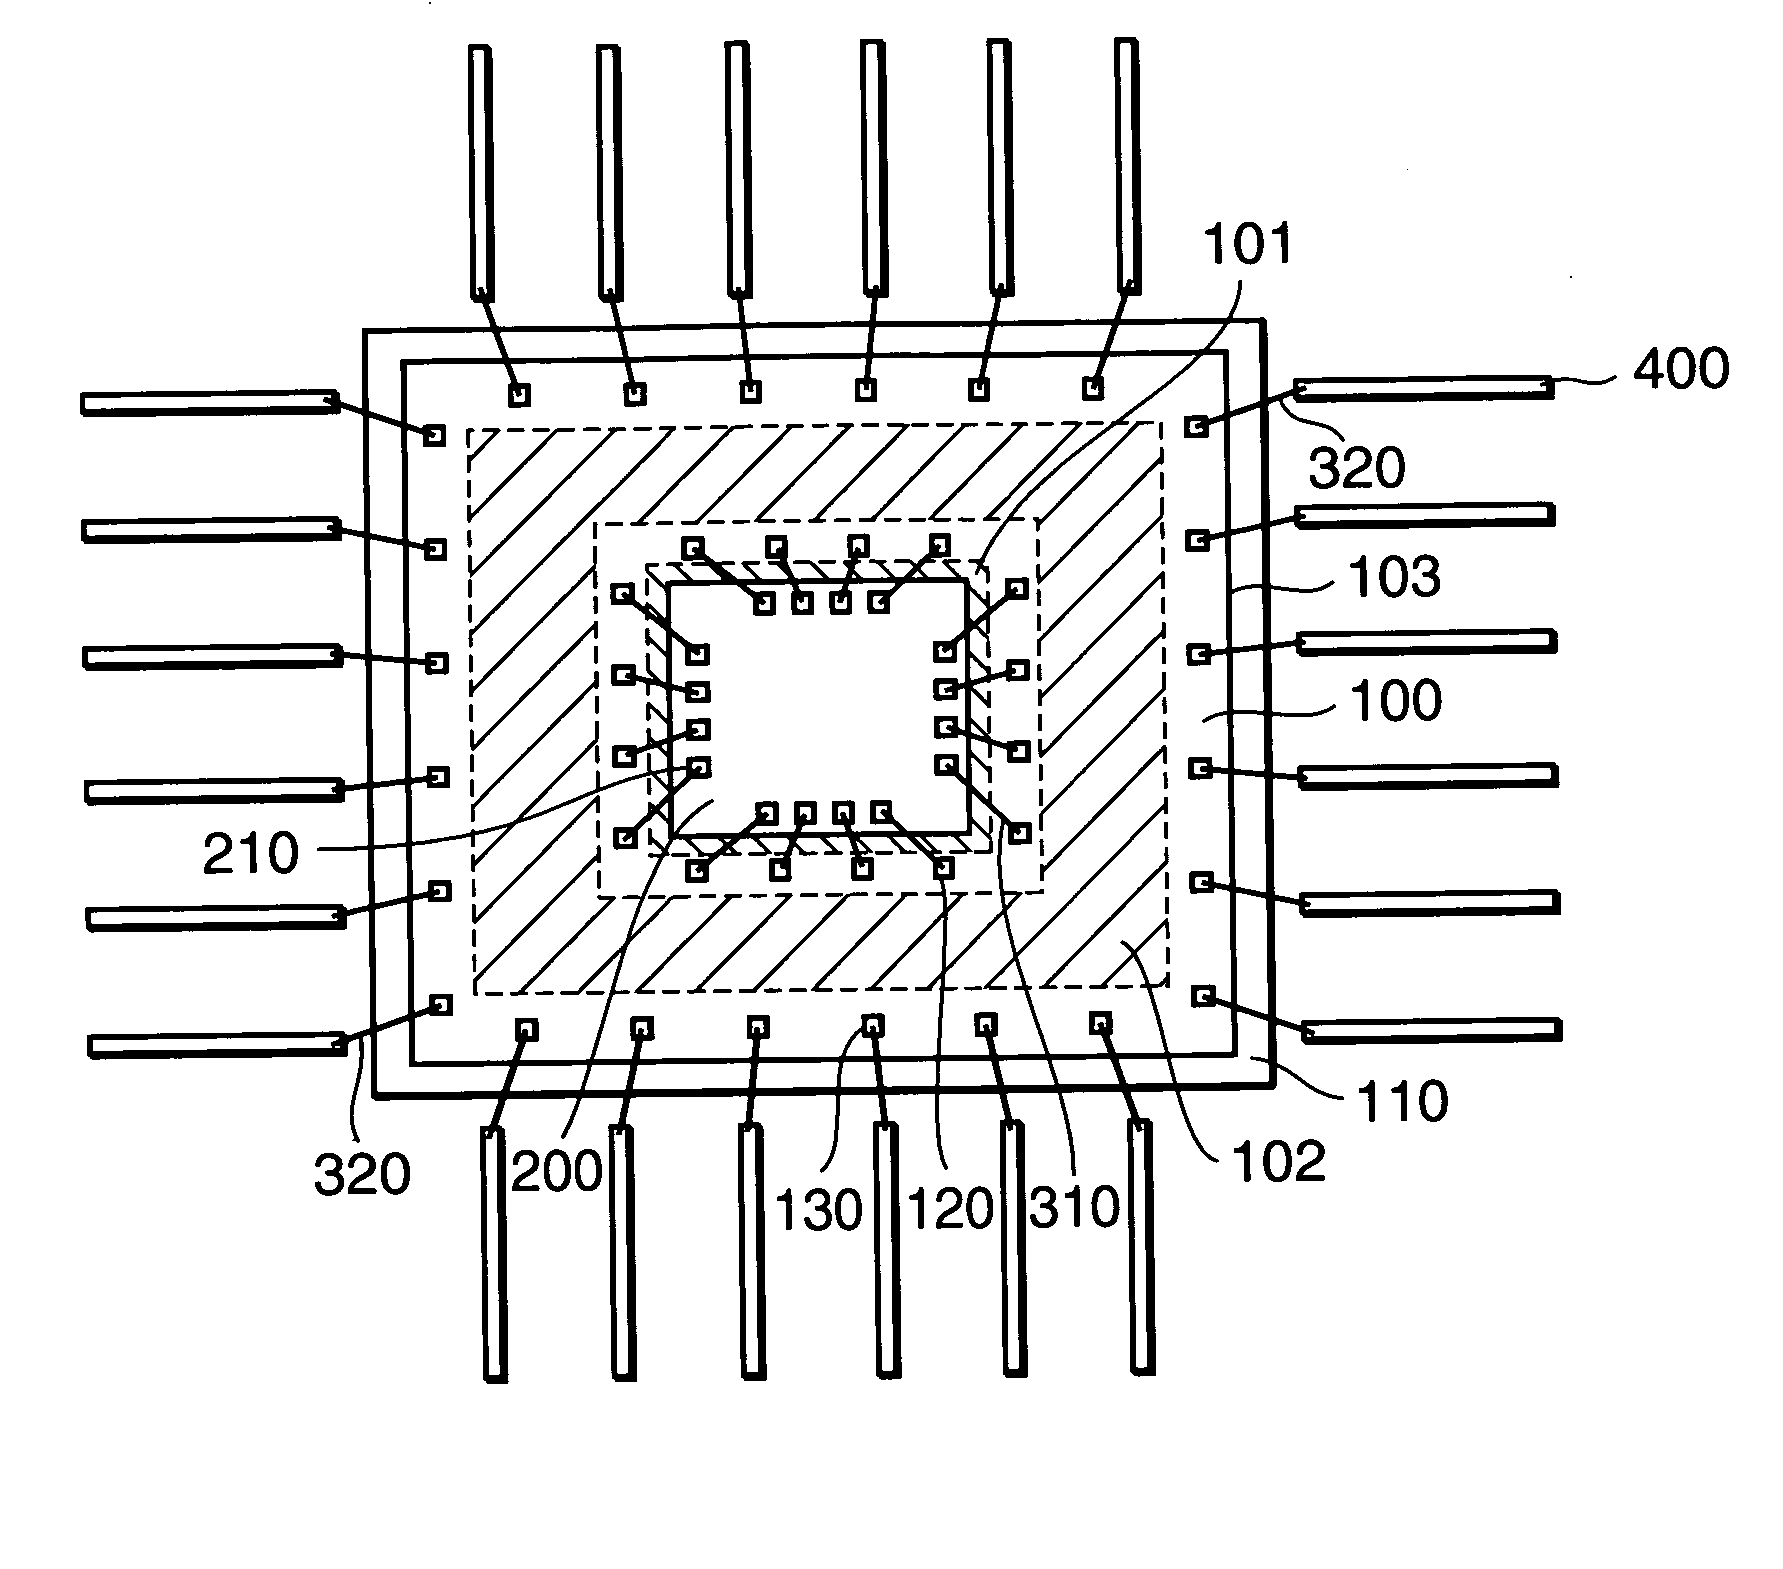 Semi conductor device